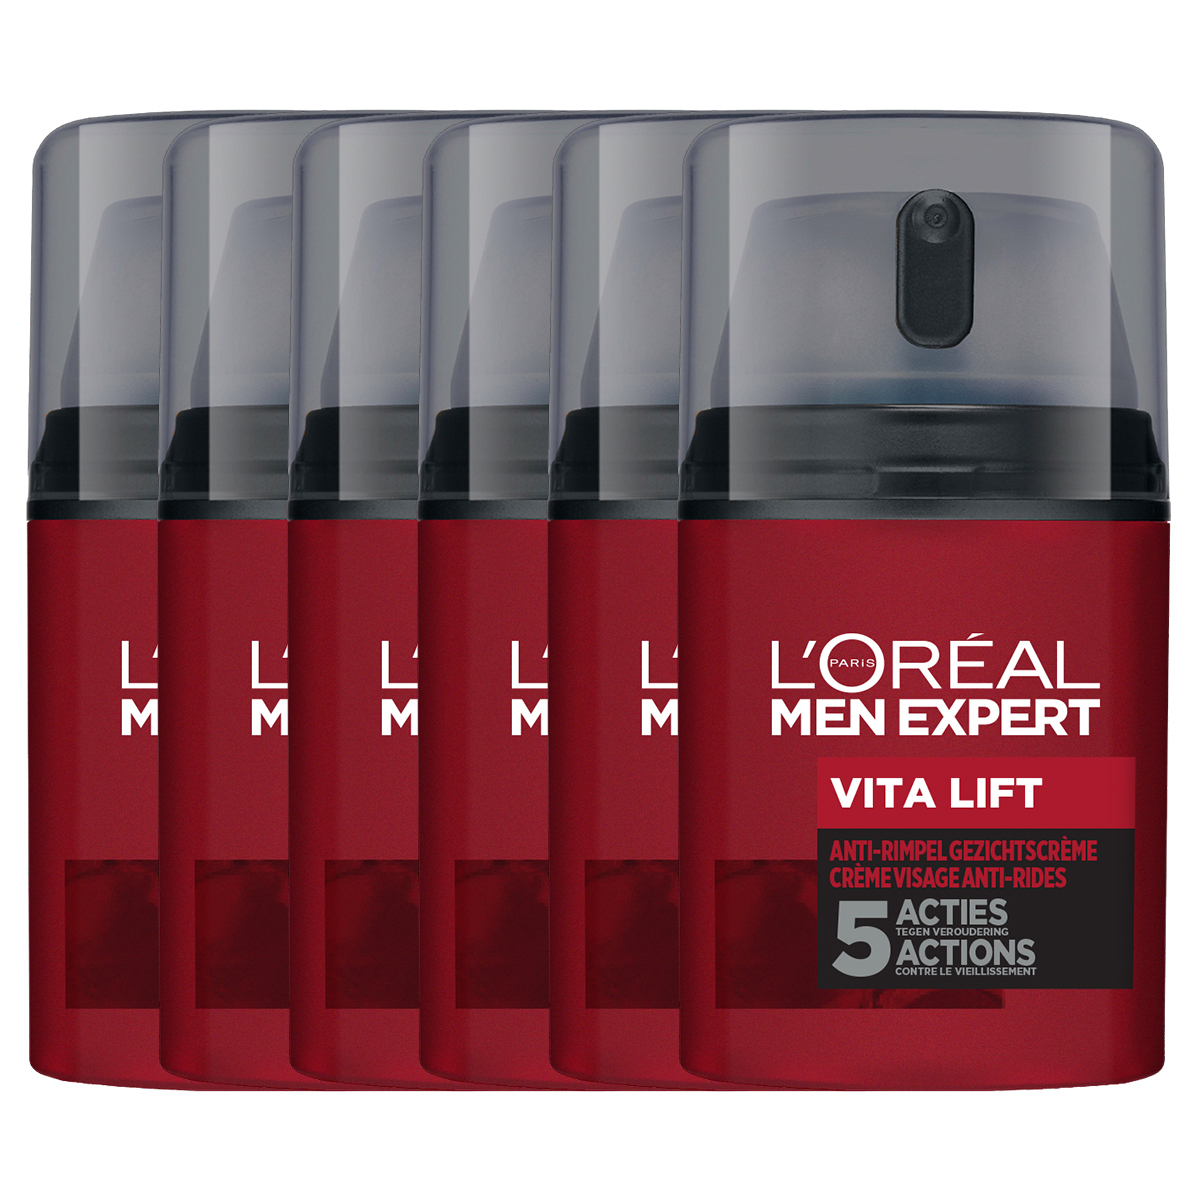 L'Oréal Men Expert Vita Lift Hydraterende Gezichtscrème - anti rimpel - 50ml - Gezichtscrème